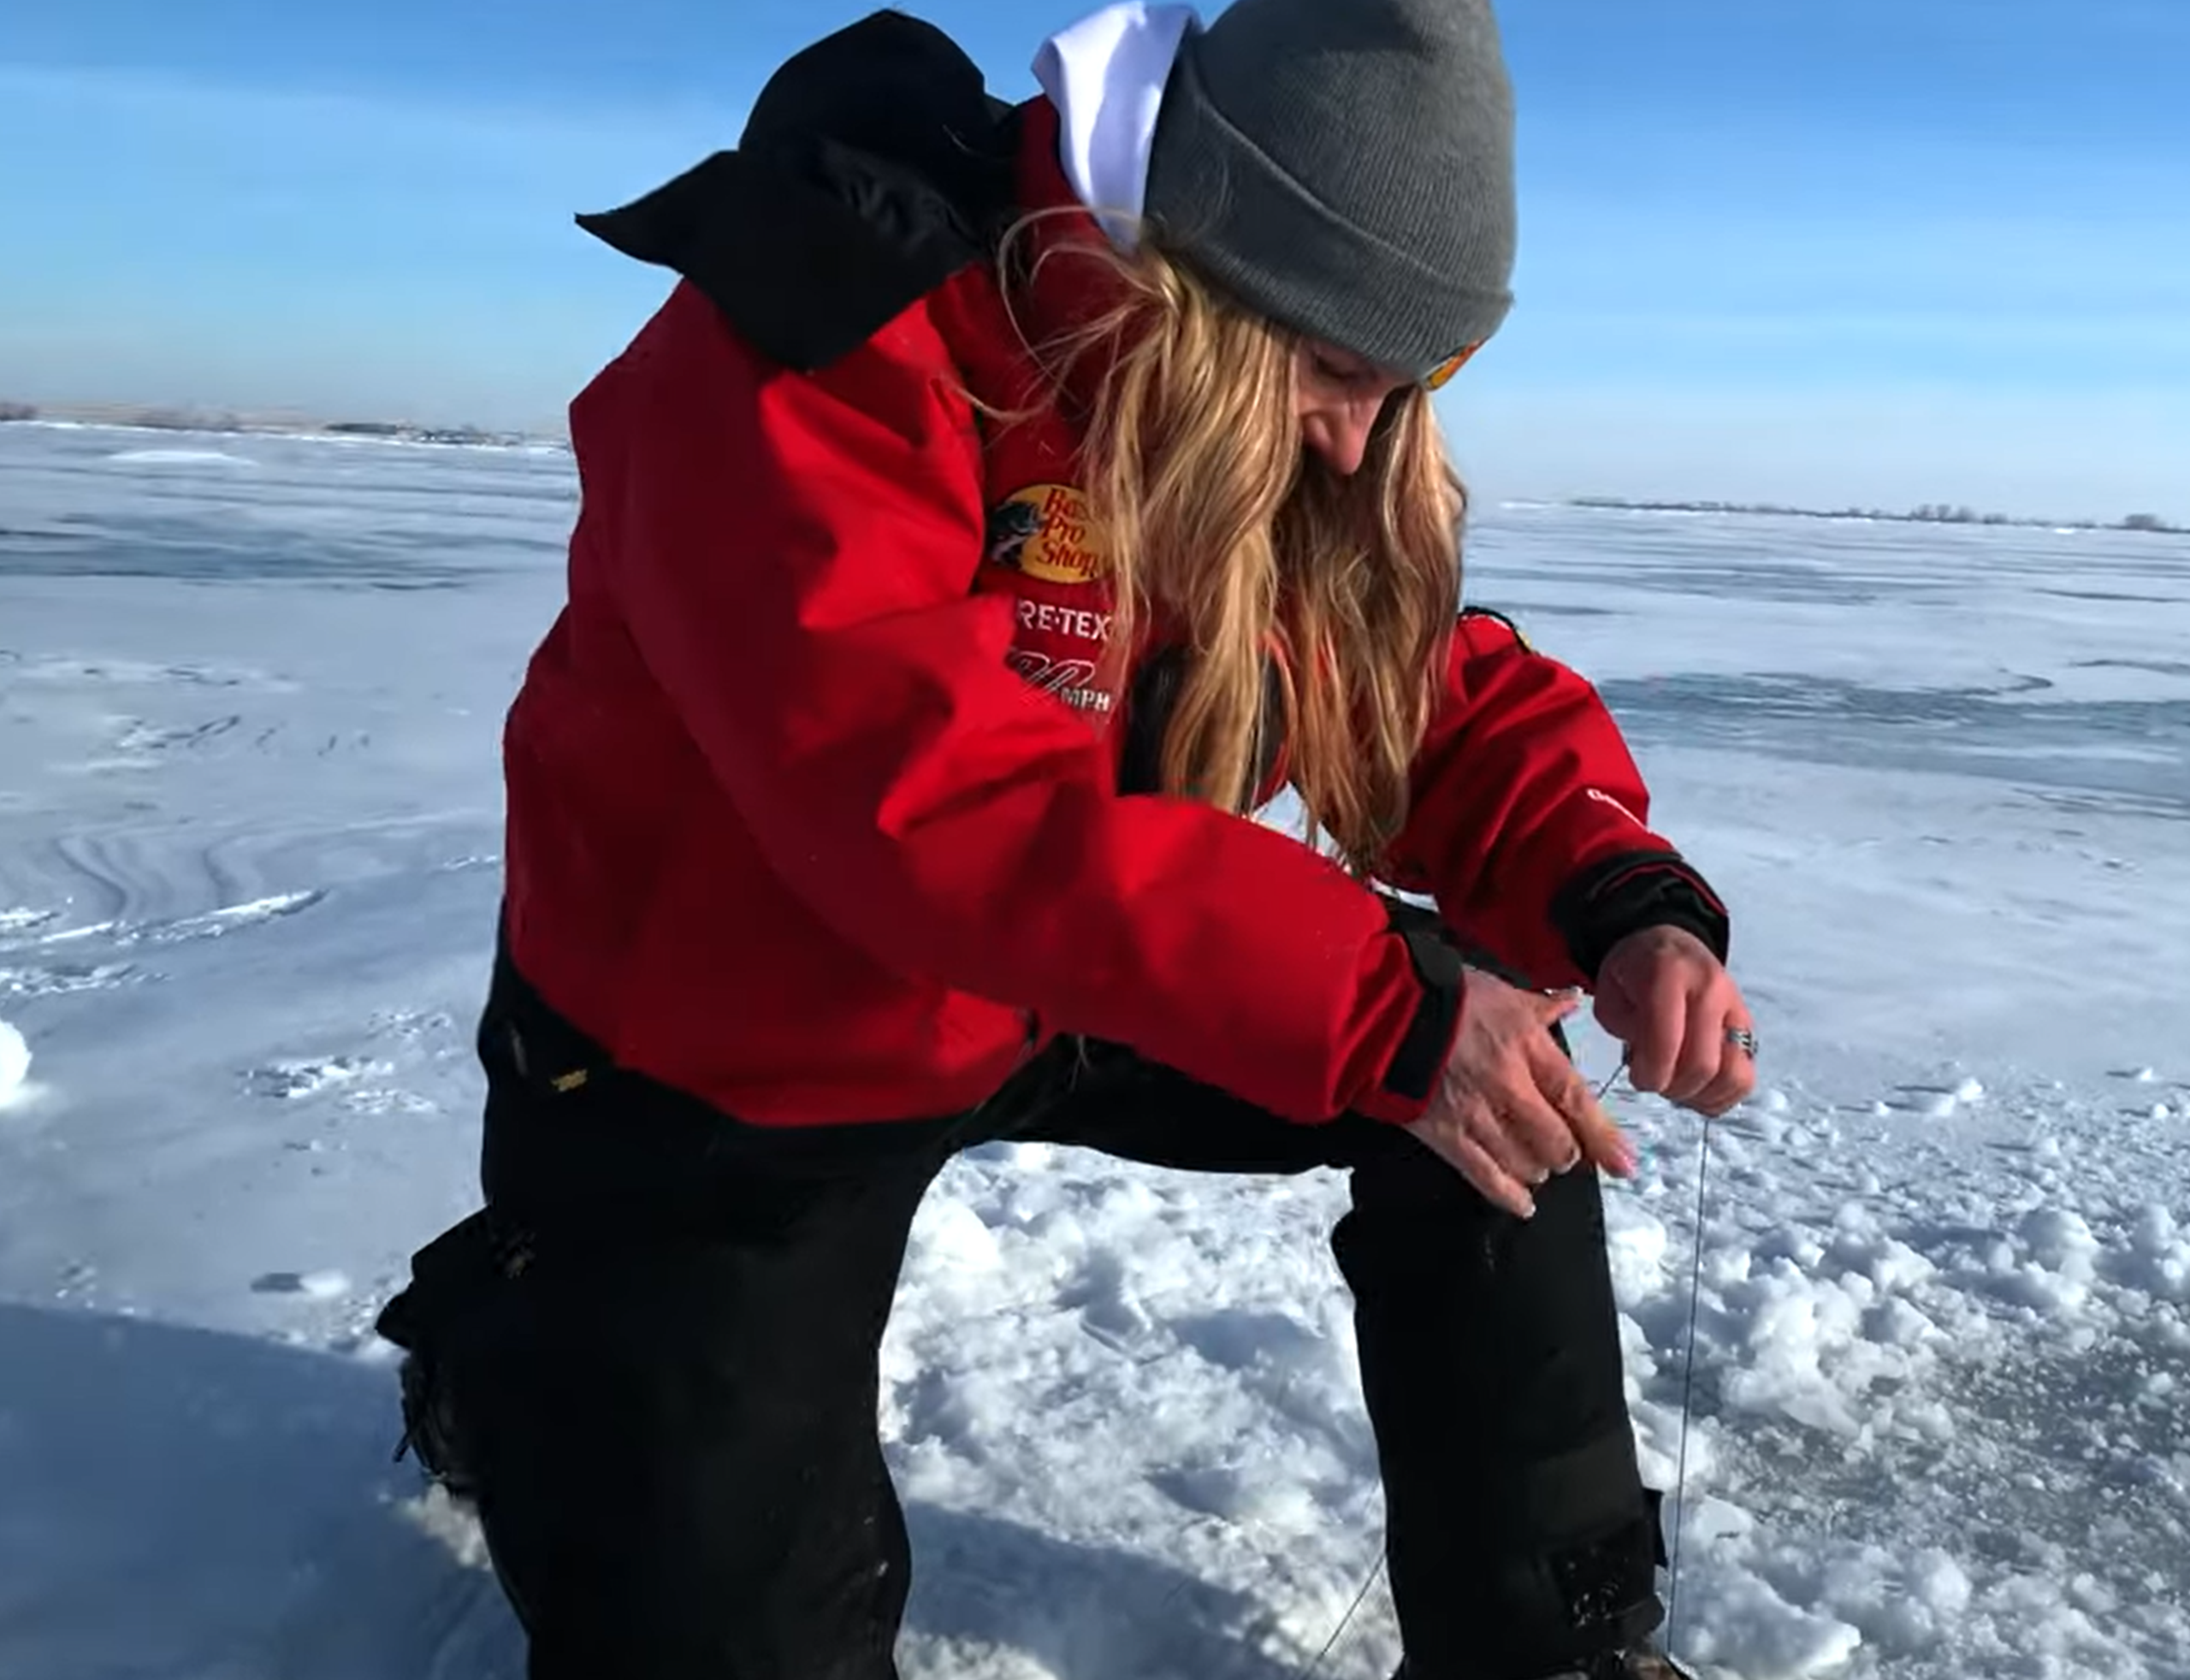 Lisa Ice Fishing